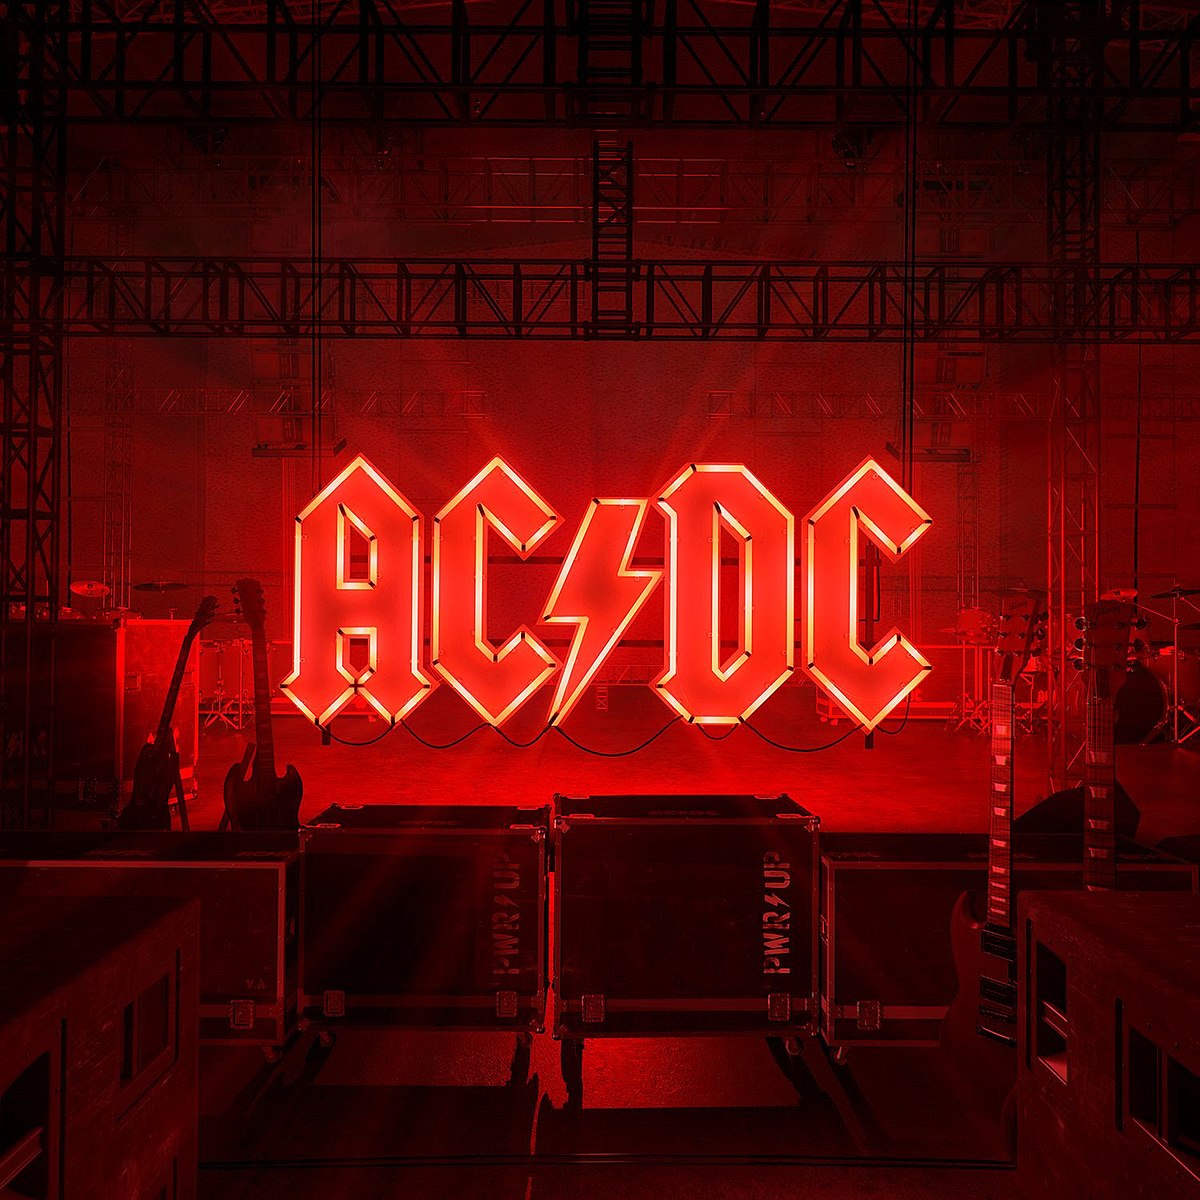 Capa do PWR UP, novo álbum do AC/DC